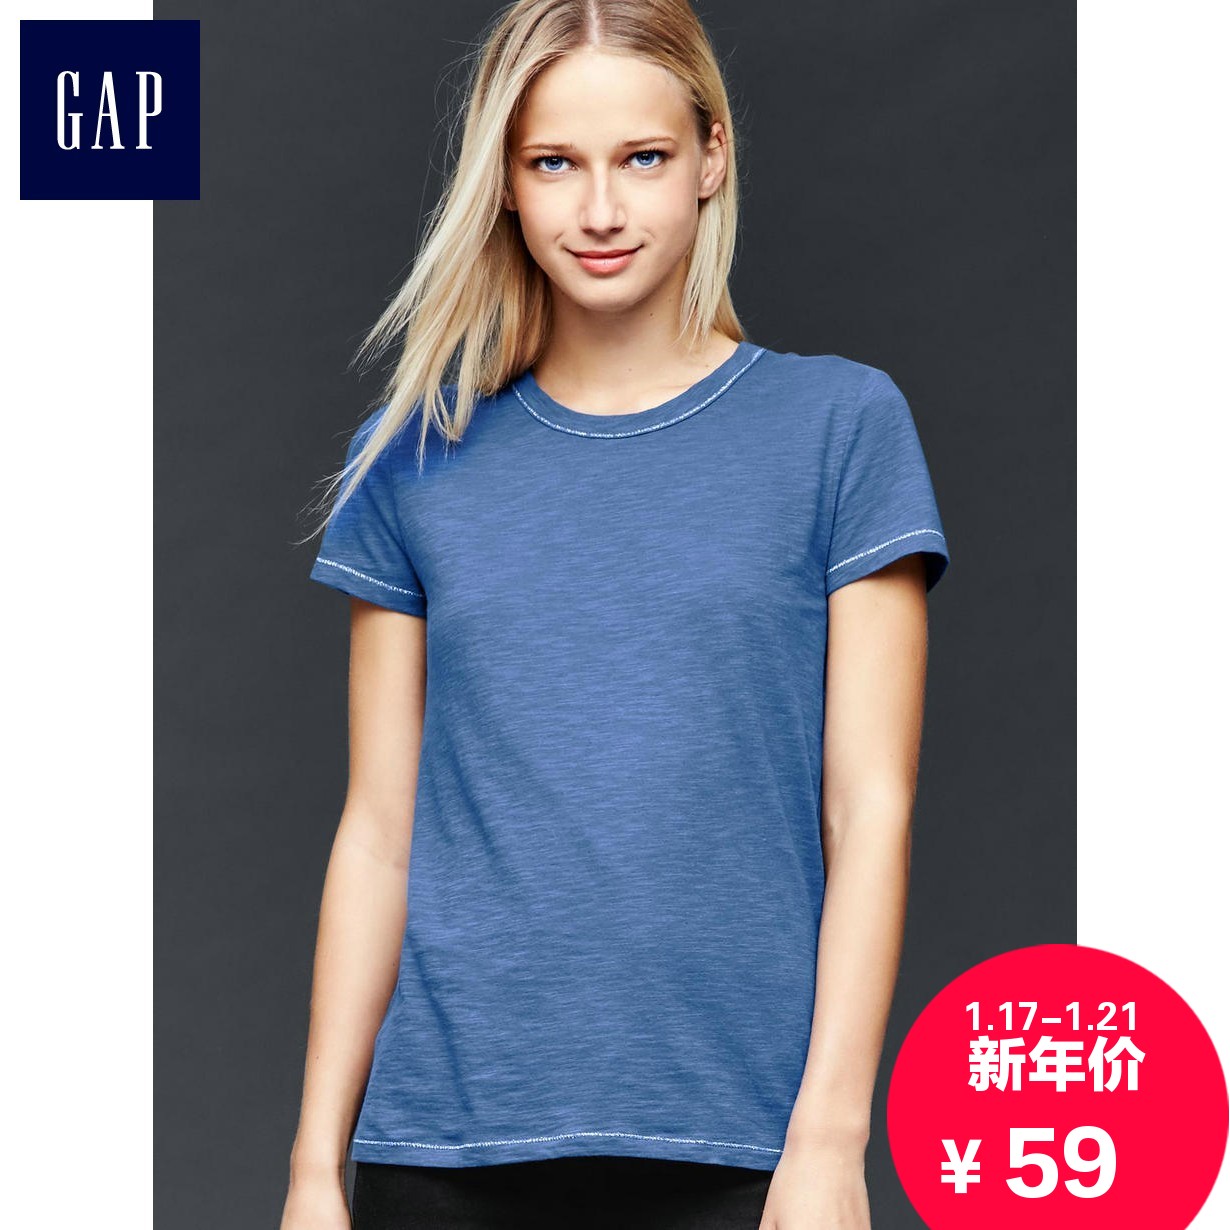 GapT恤怎么样,Gap女装质量好吗